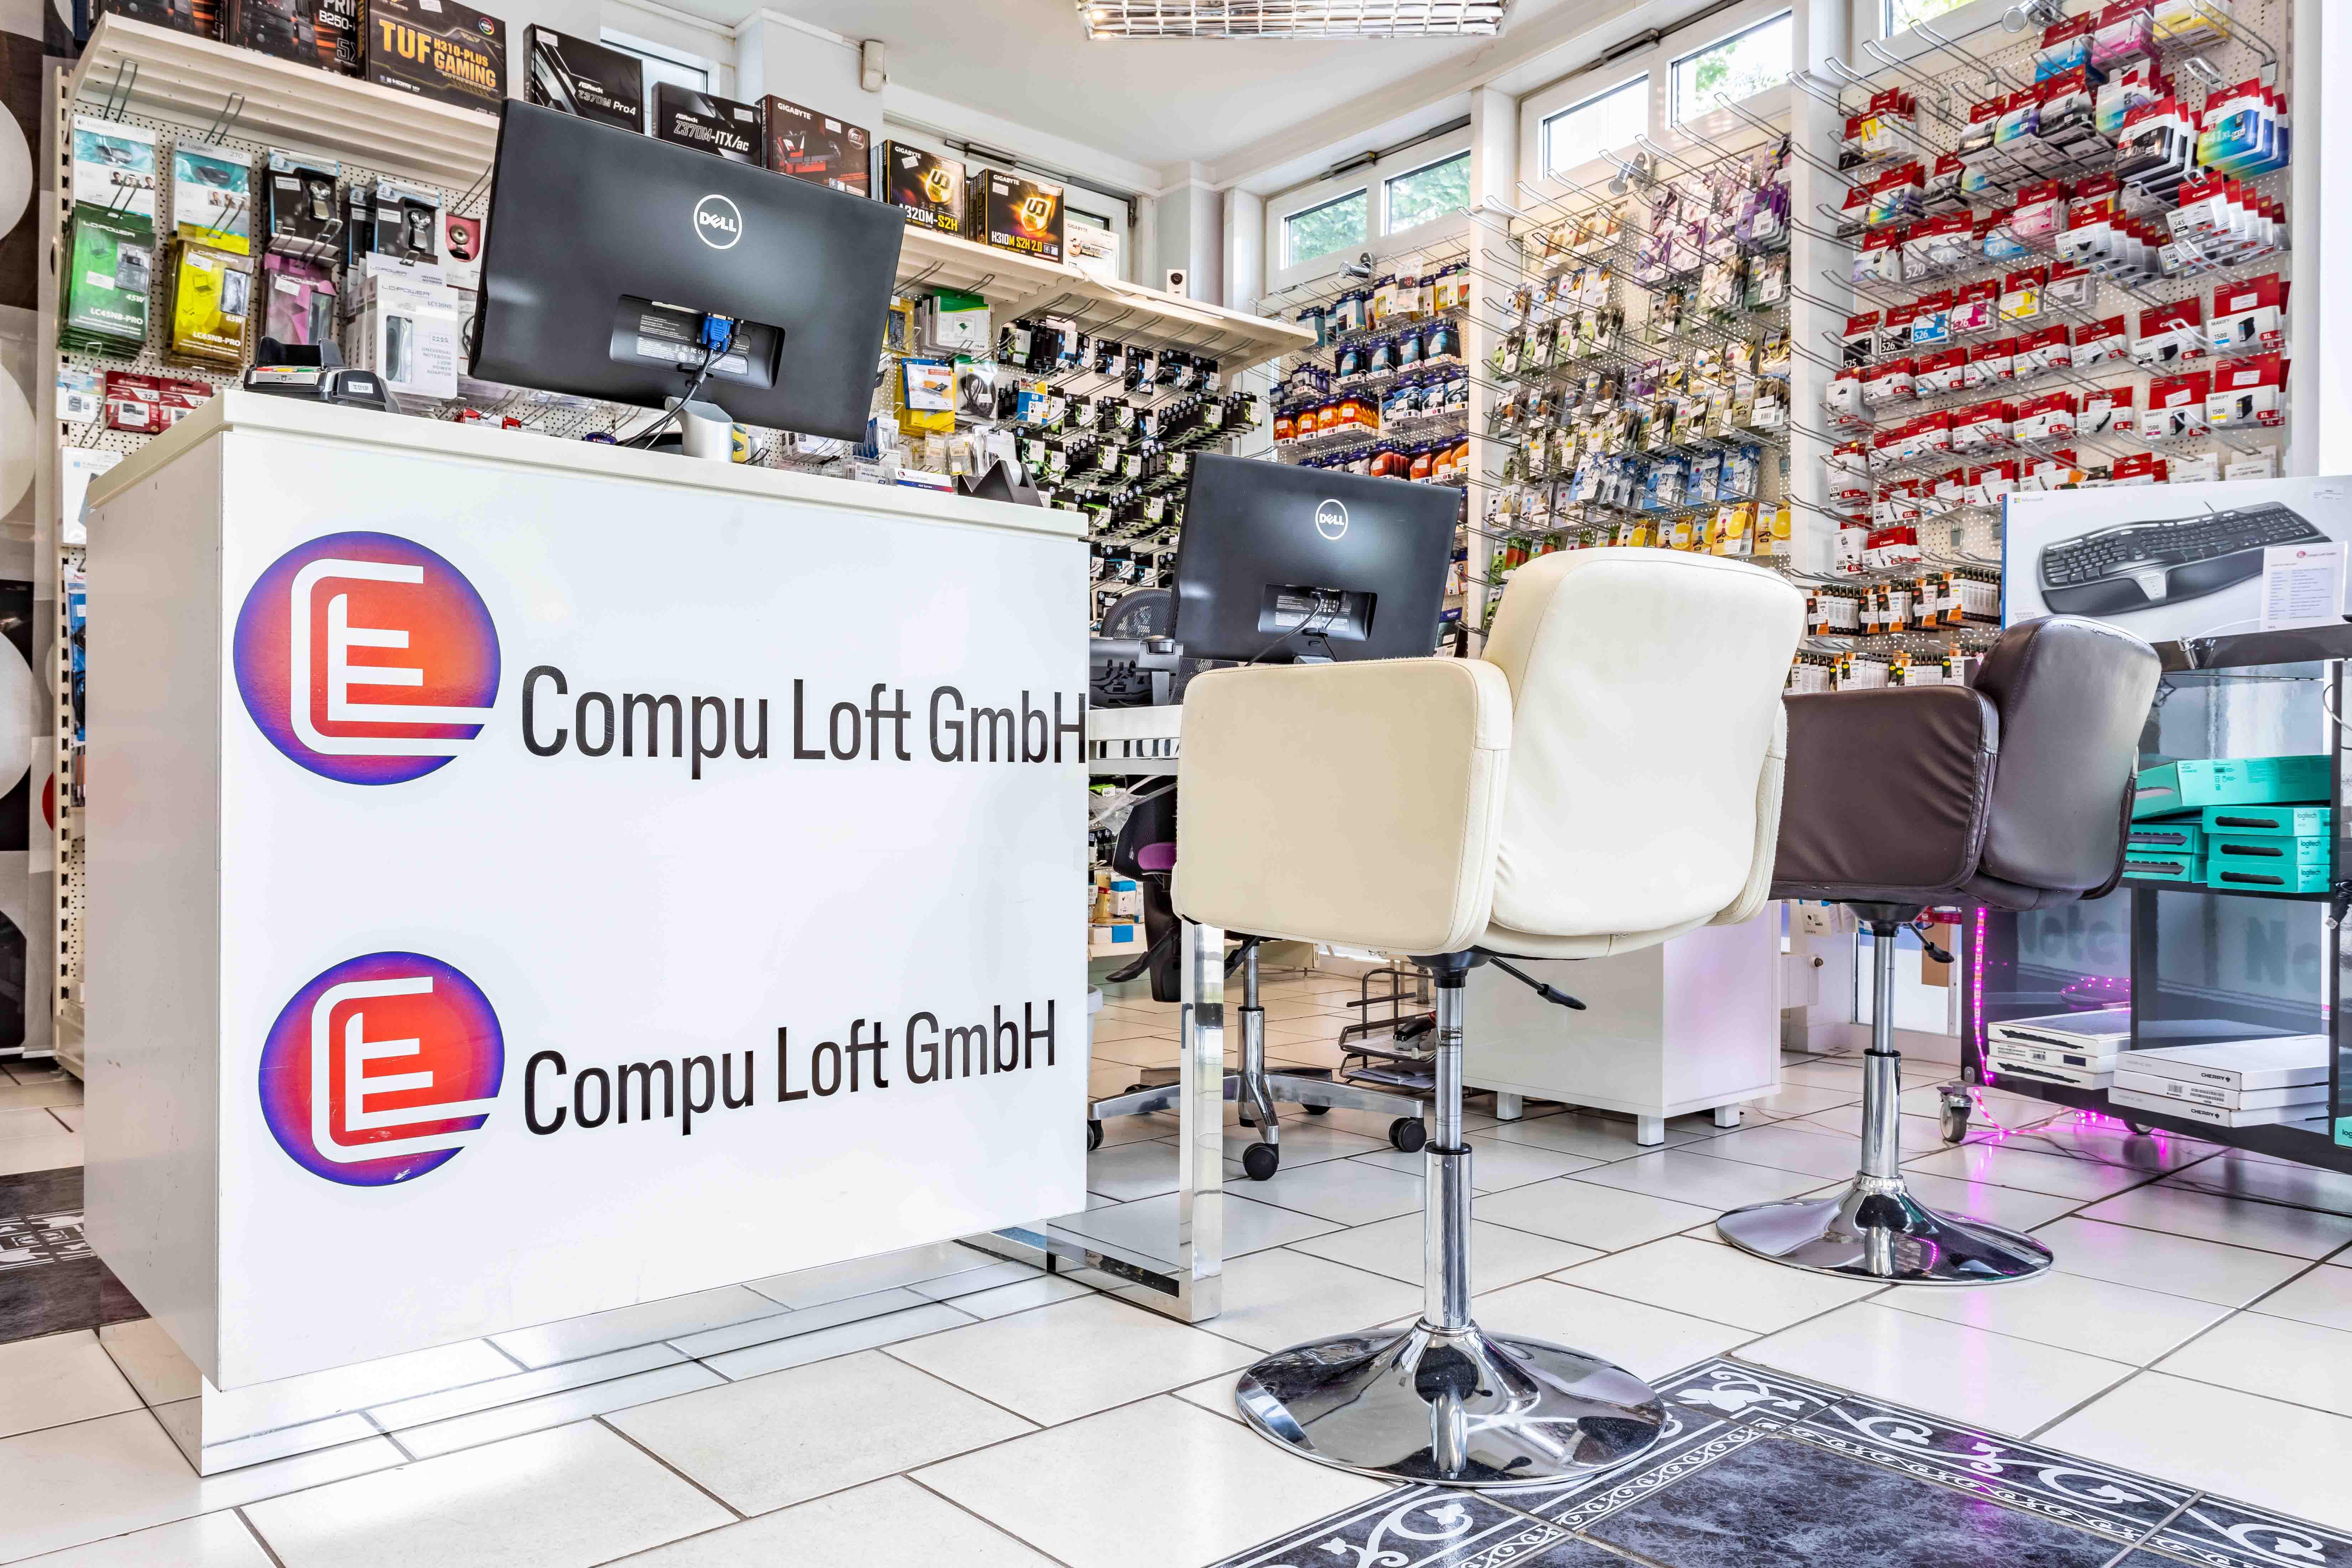 Compu Loft GmbH Bonn, Burgstraße 69 in Bonn